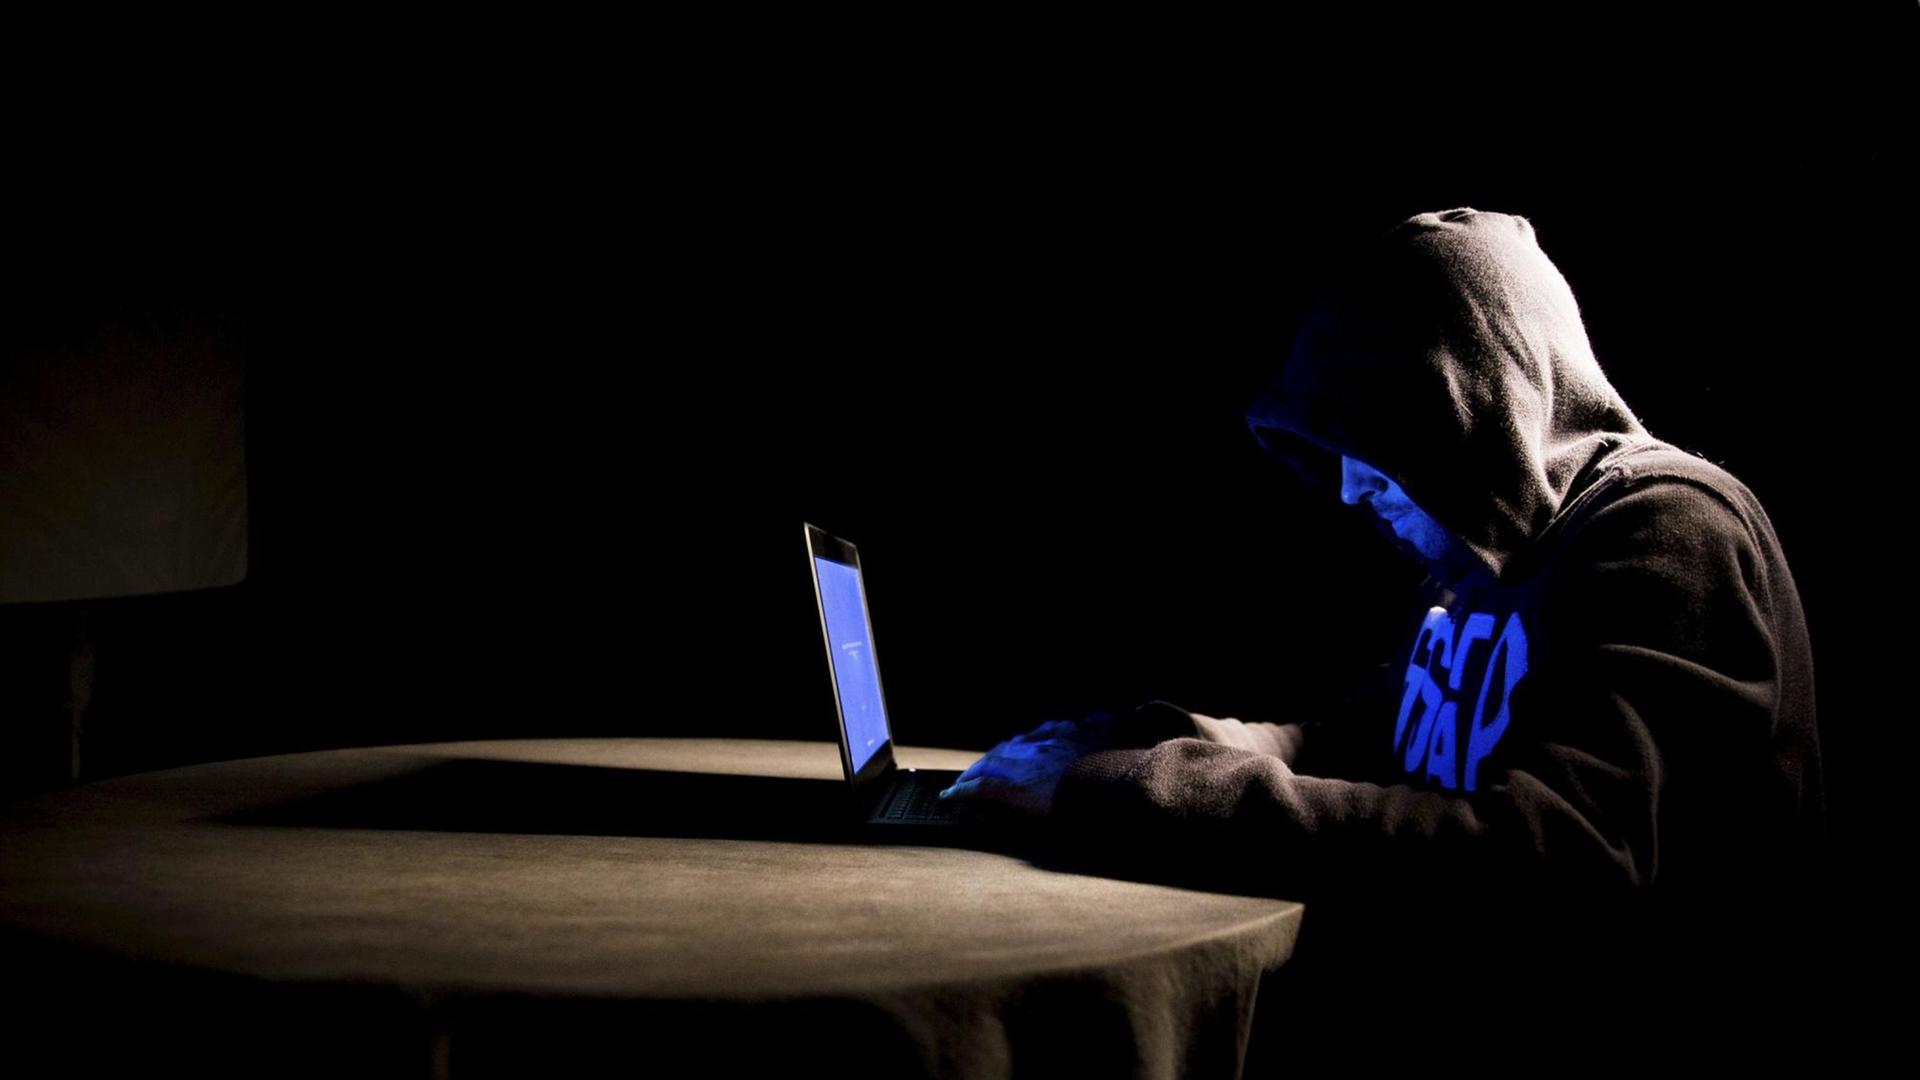 Mann mit Kapuze über dem Kopf sitzt bei sehr schwacher Beleuchtung an einem Tisch. Auf dem Tisch steht ein Laptop.